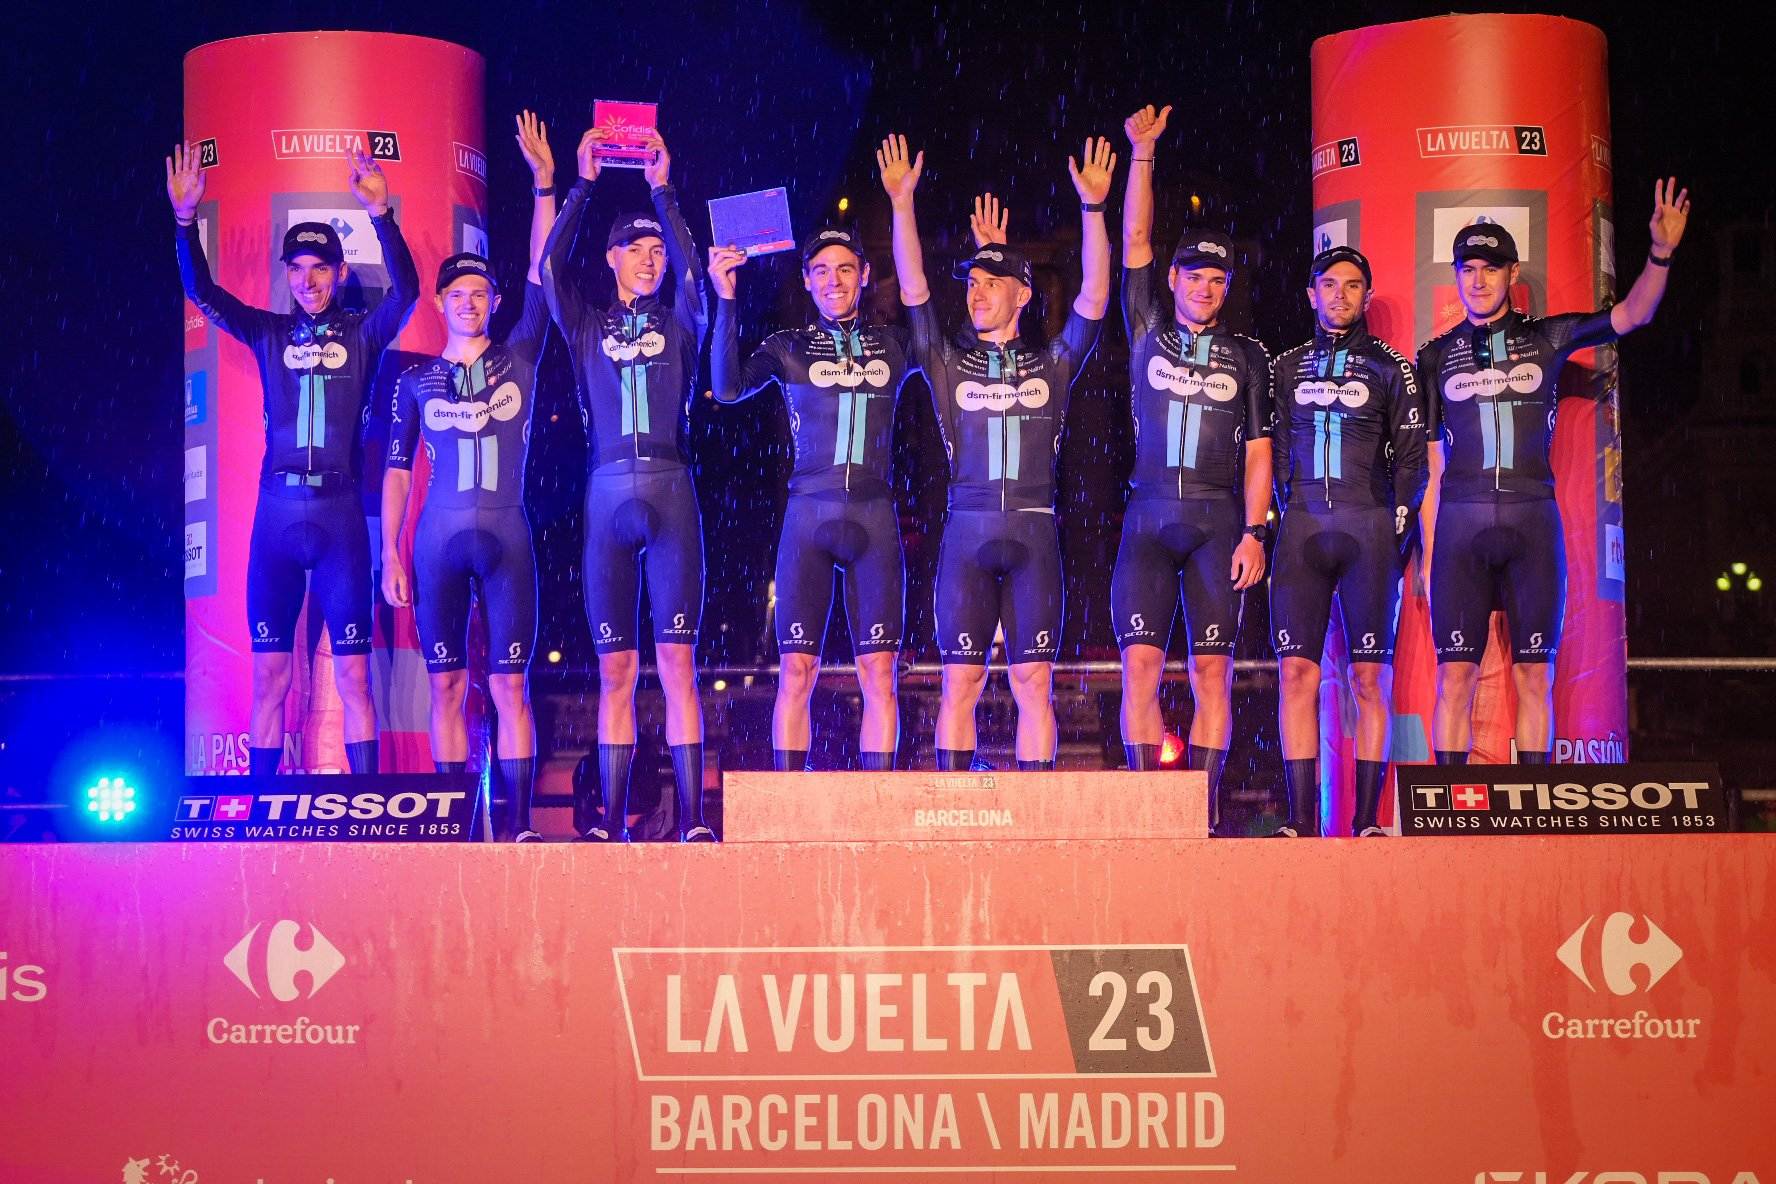 El Team dsm-firmenich s'endú a Barcelona la 1a etapa de la Vuelta, un pròleg marcat per la pluja